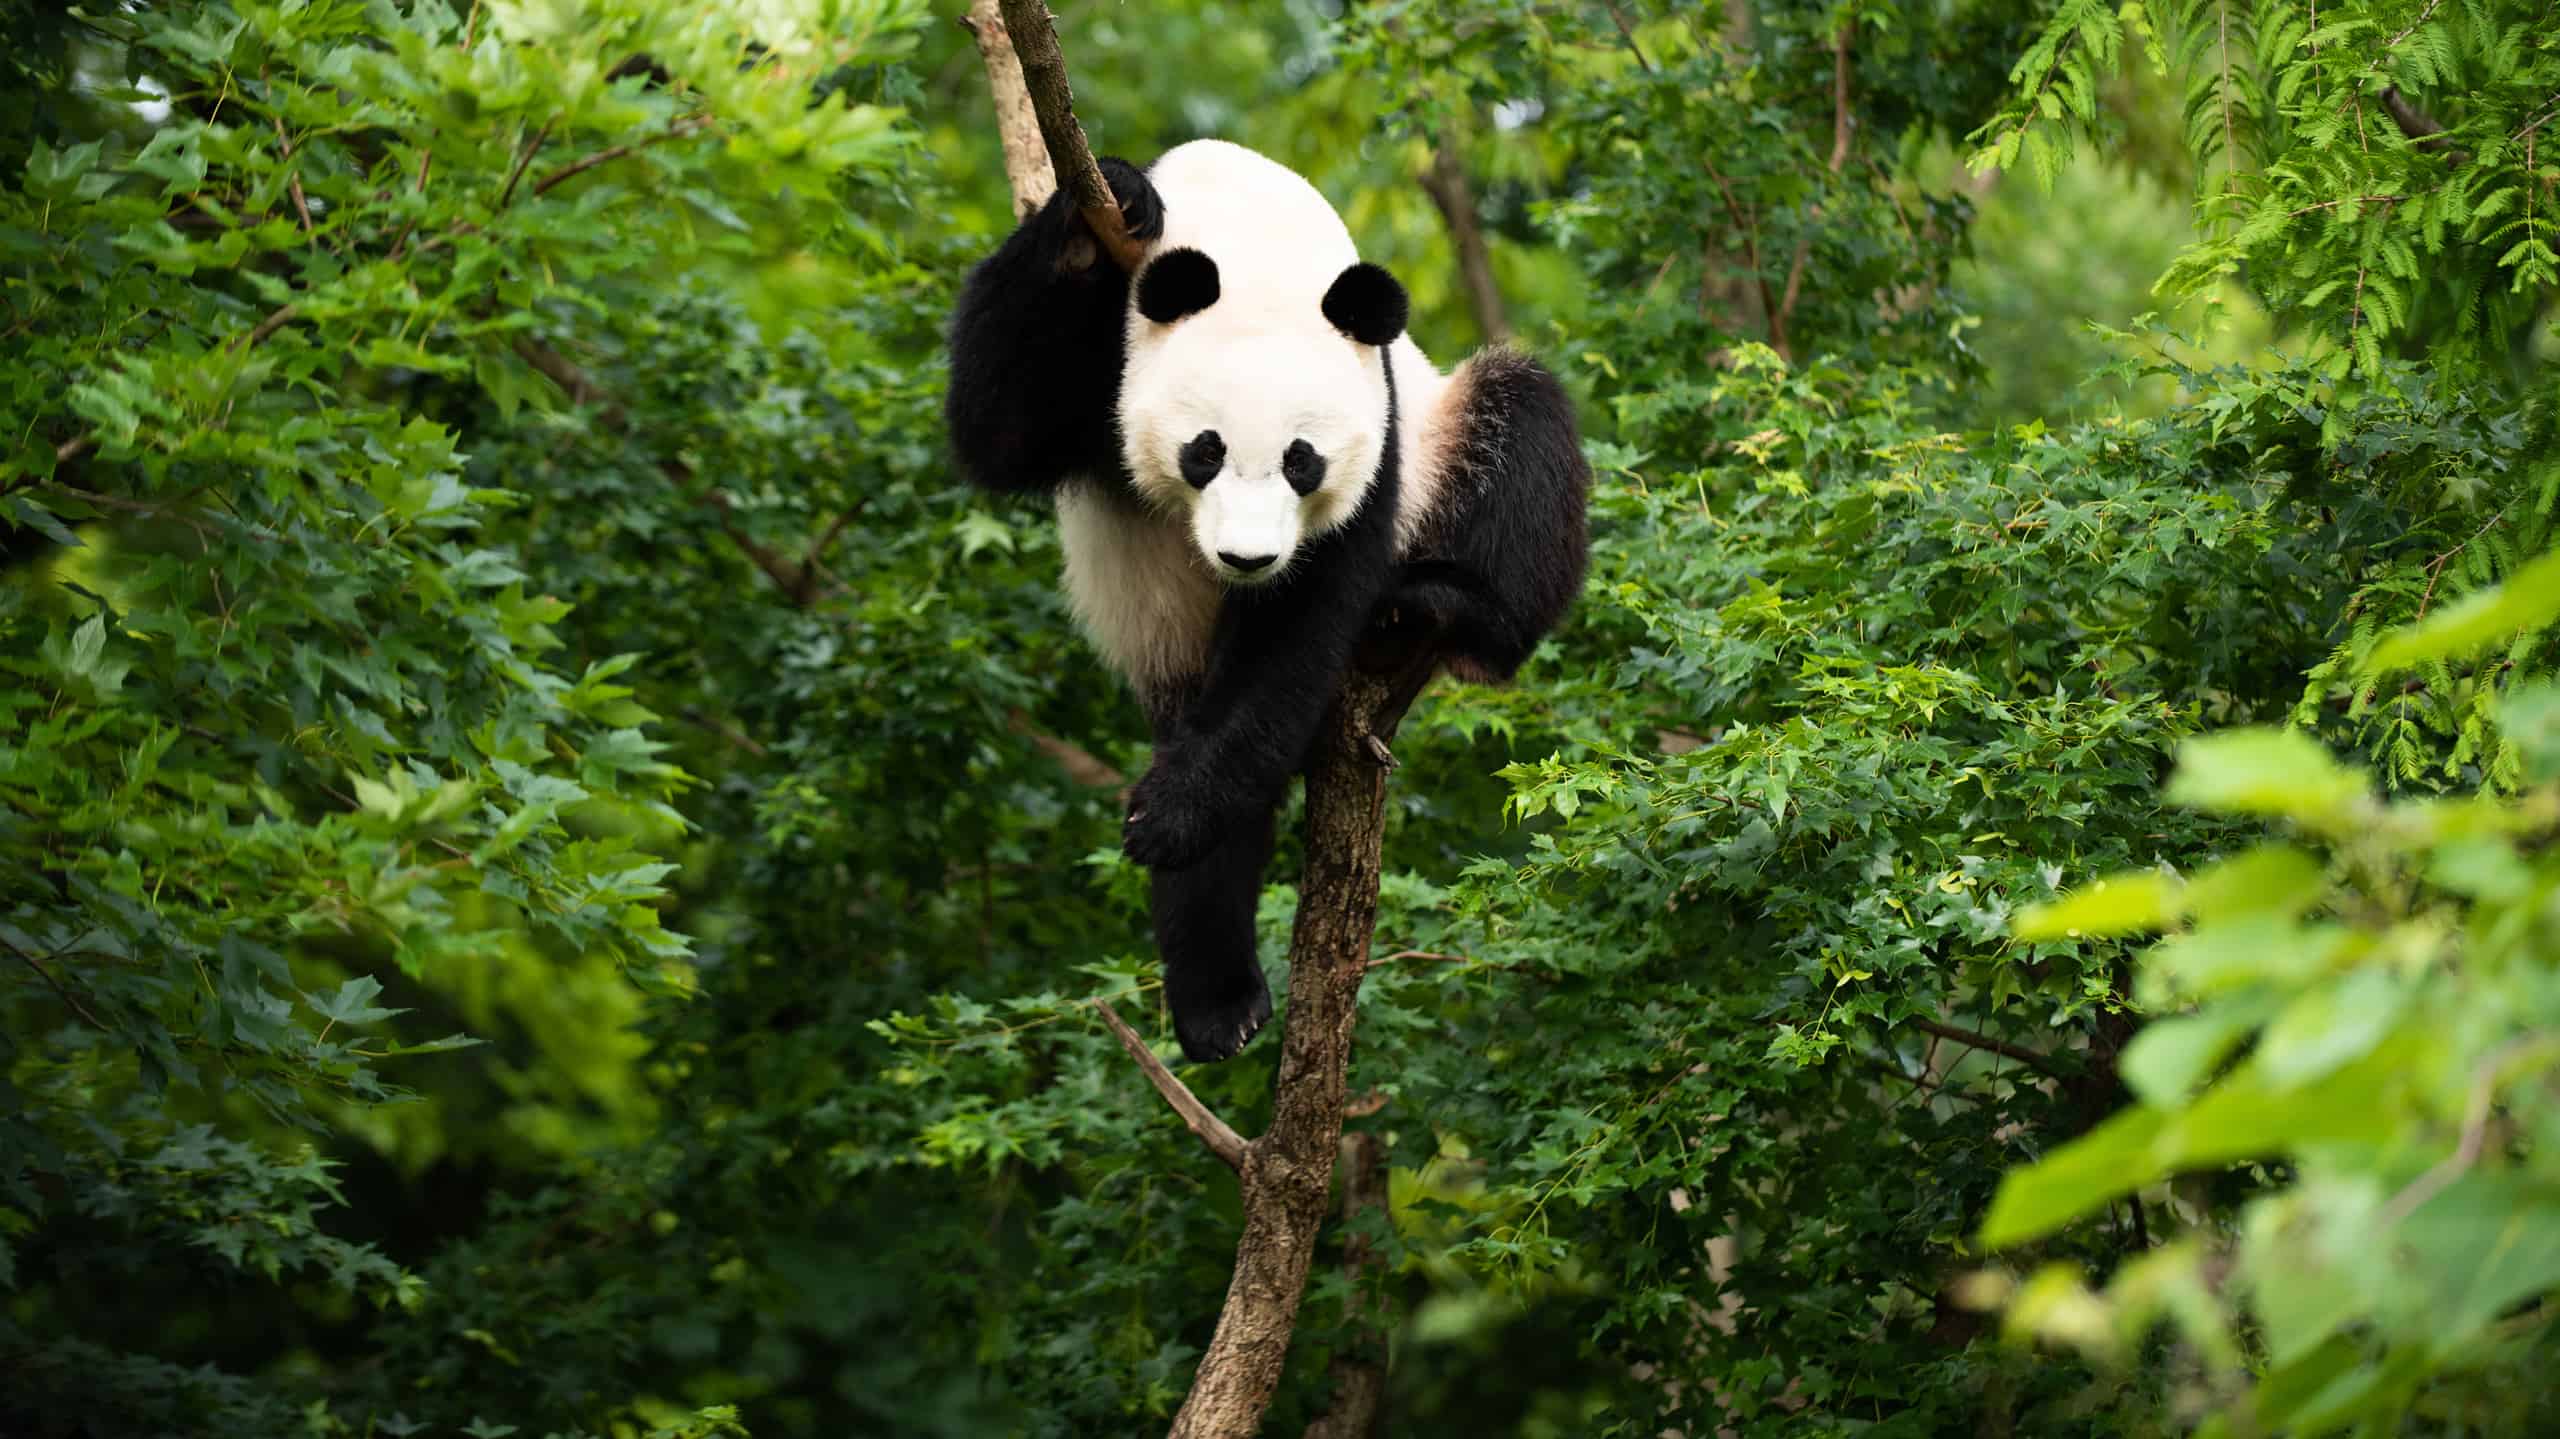 Giant Panda Bei Bei in a tree